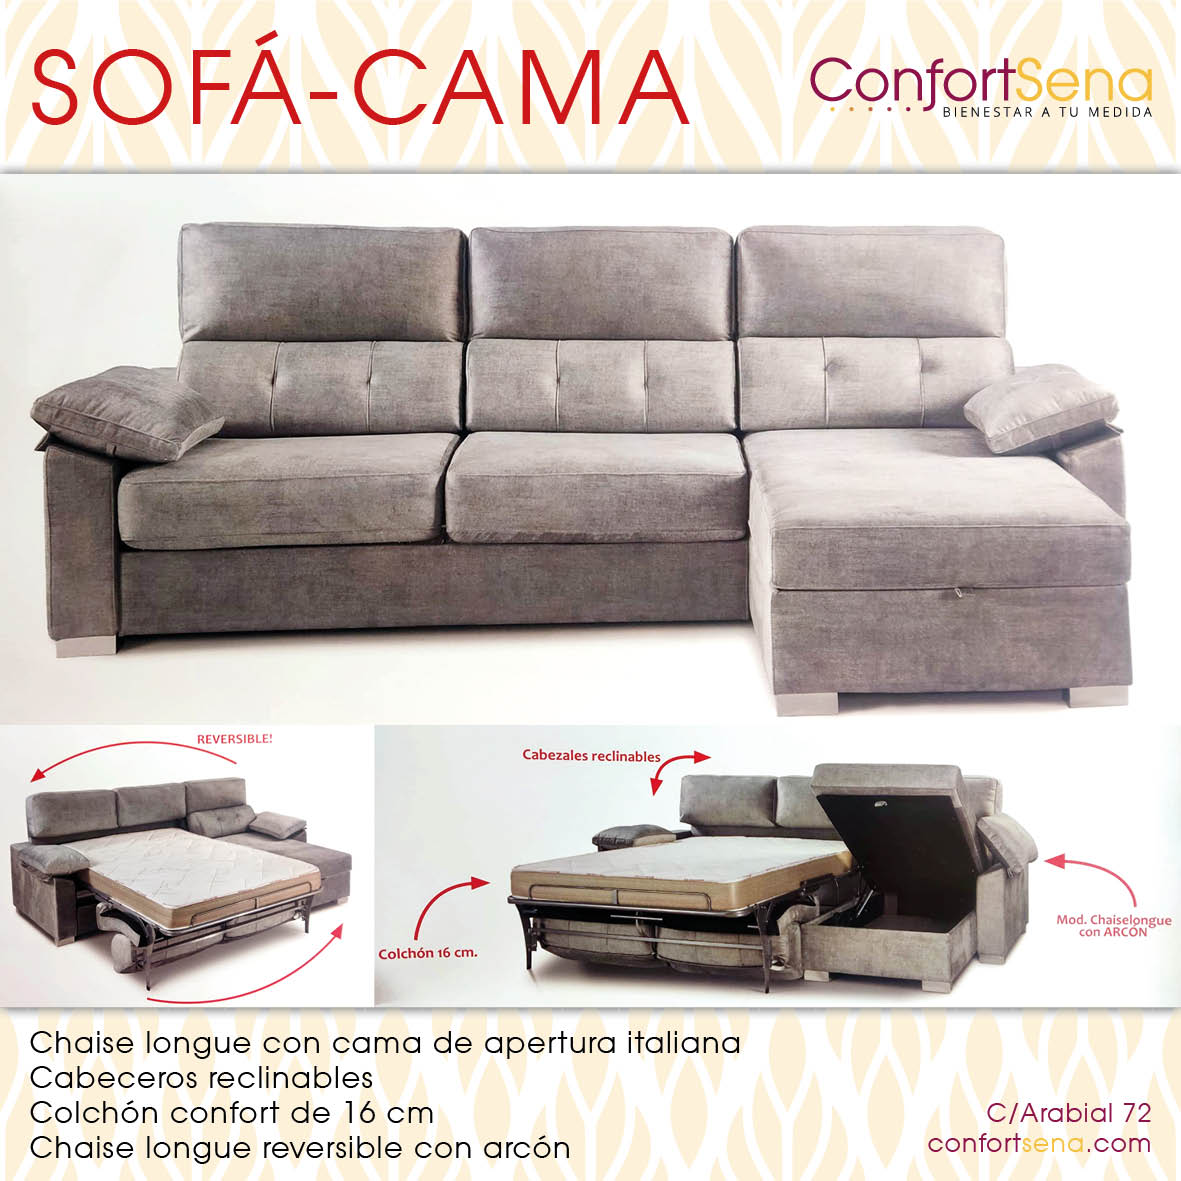 sofa cama granada chaise longue confortsena